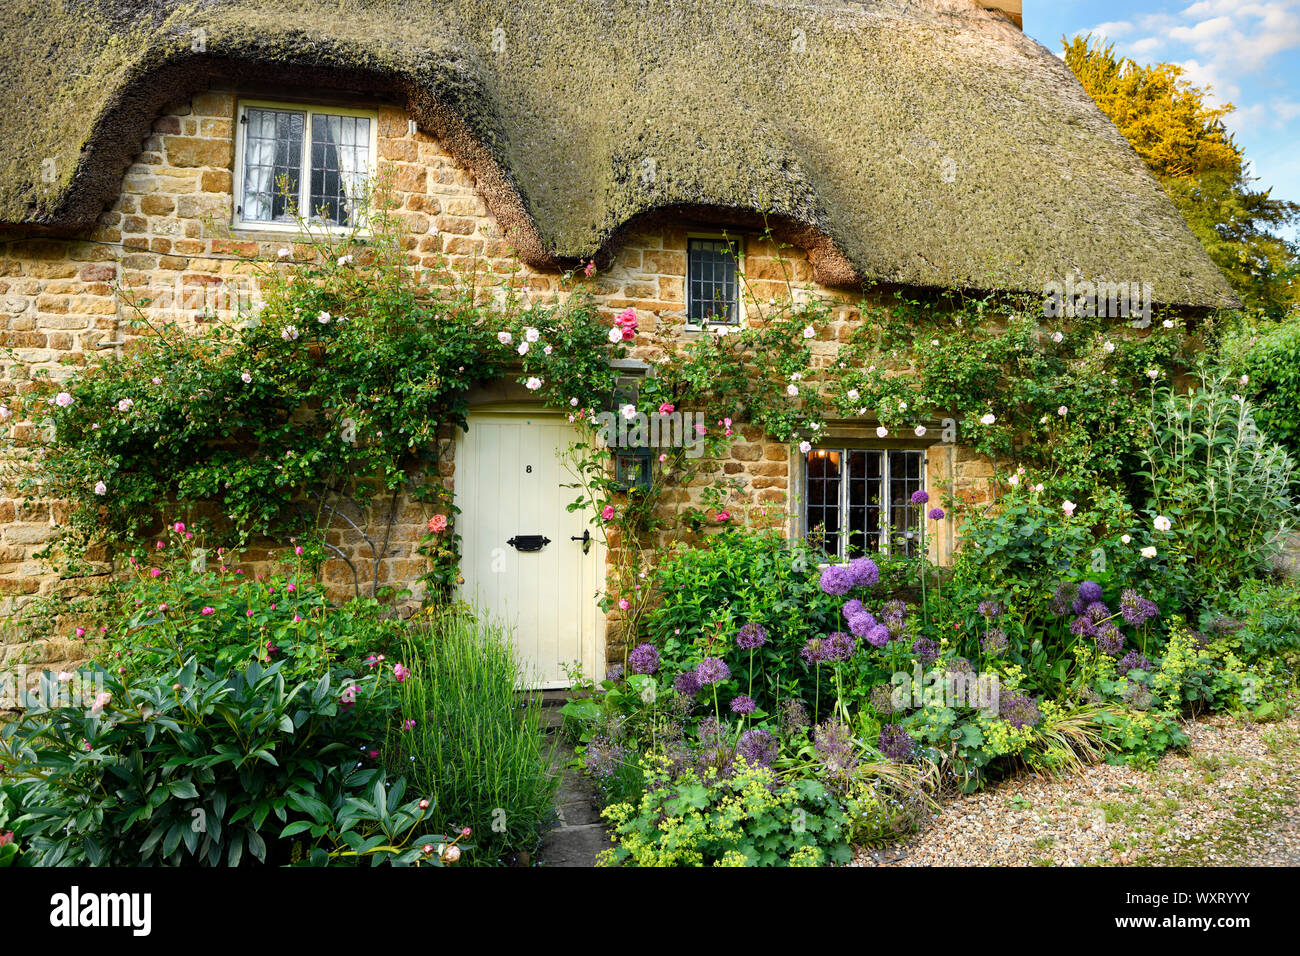 Historische reetgedeckte Ferienhaus in großen Tew dorf mit Garten Blumen und Klettern Rose auf gelb Cotswold stone Oxfordshire England Stockfoto